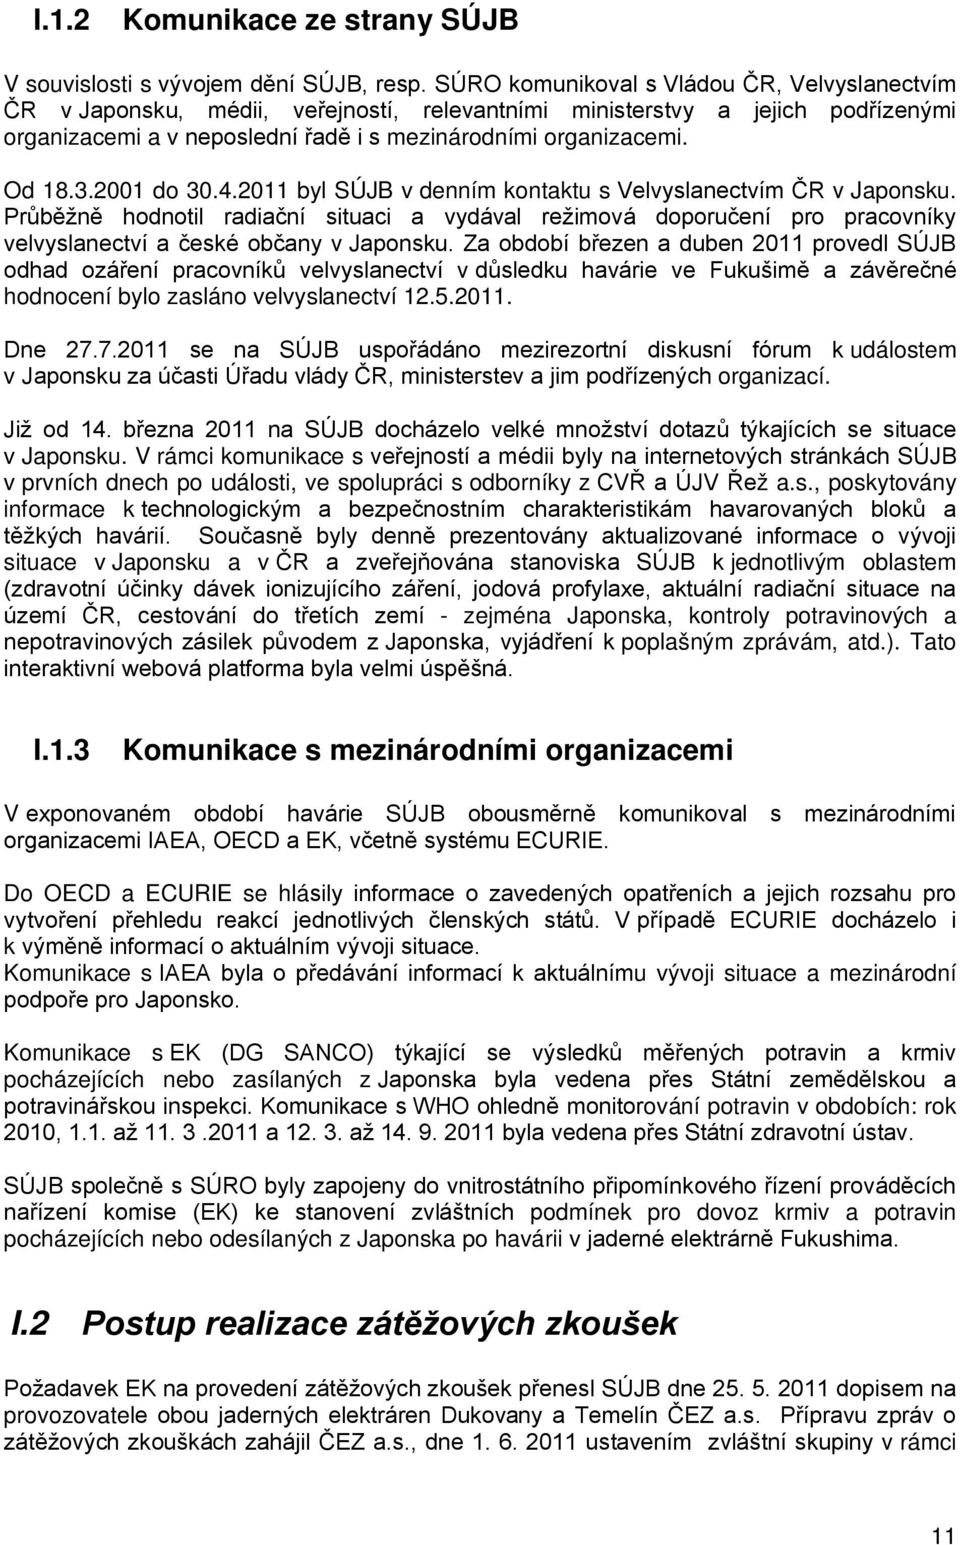 2001 do 30.4.2011 byl SÚJB v denním kontaktu s Velvyslanectvím ČR v Japonsku. Průběžně hodnotil radiační situaci a vydával režimová doporučení pro pracovníky velvyslanectví a české občany v Japonsku.